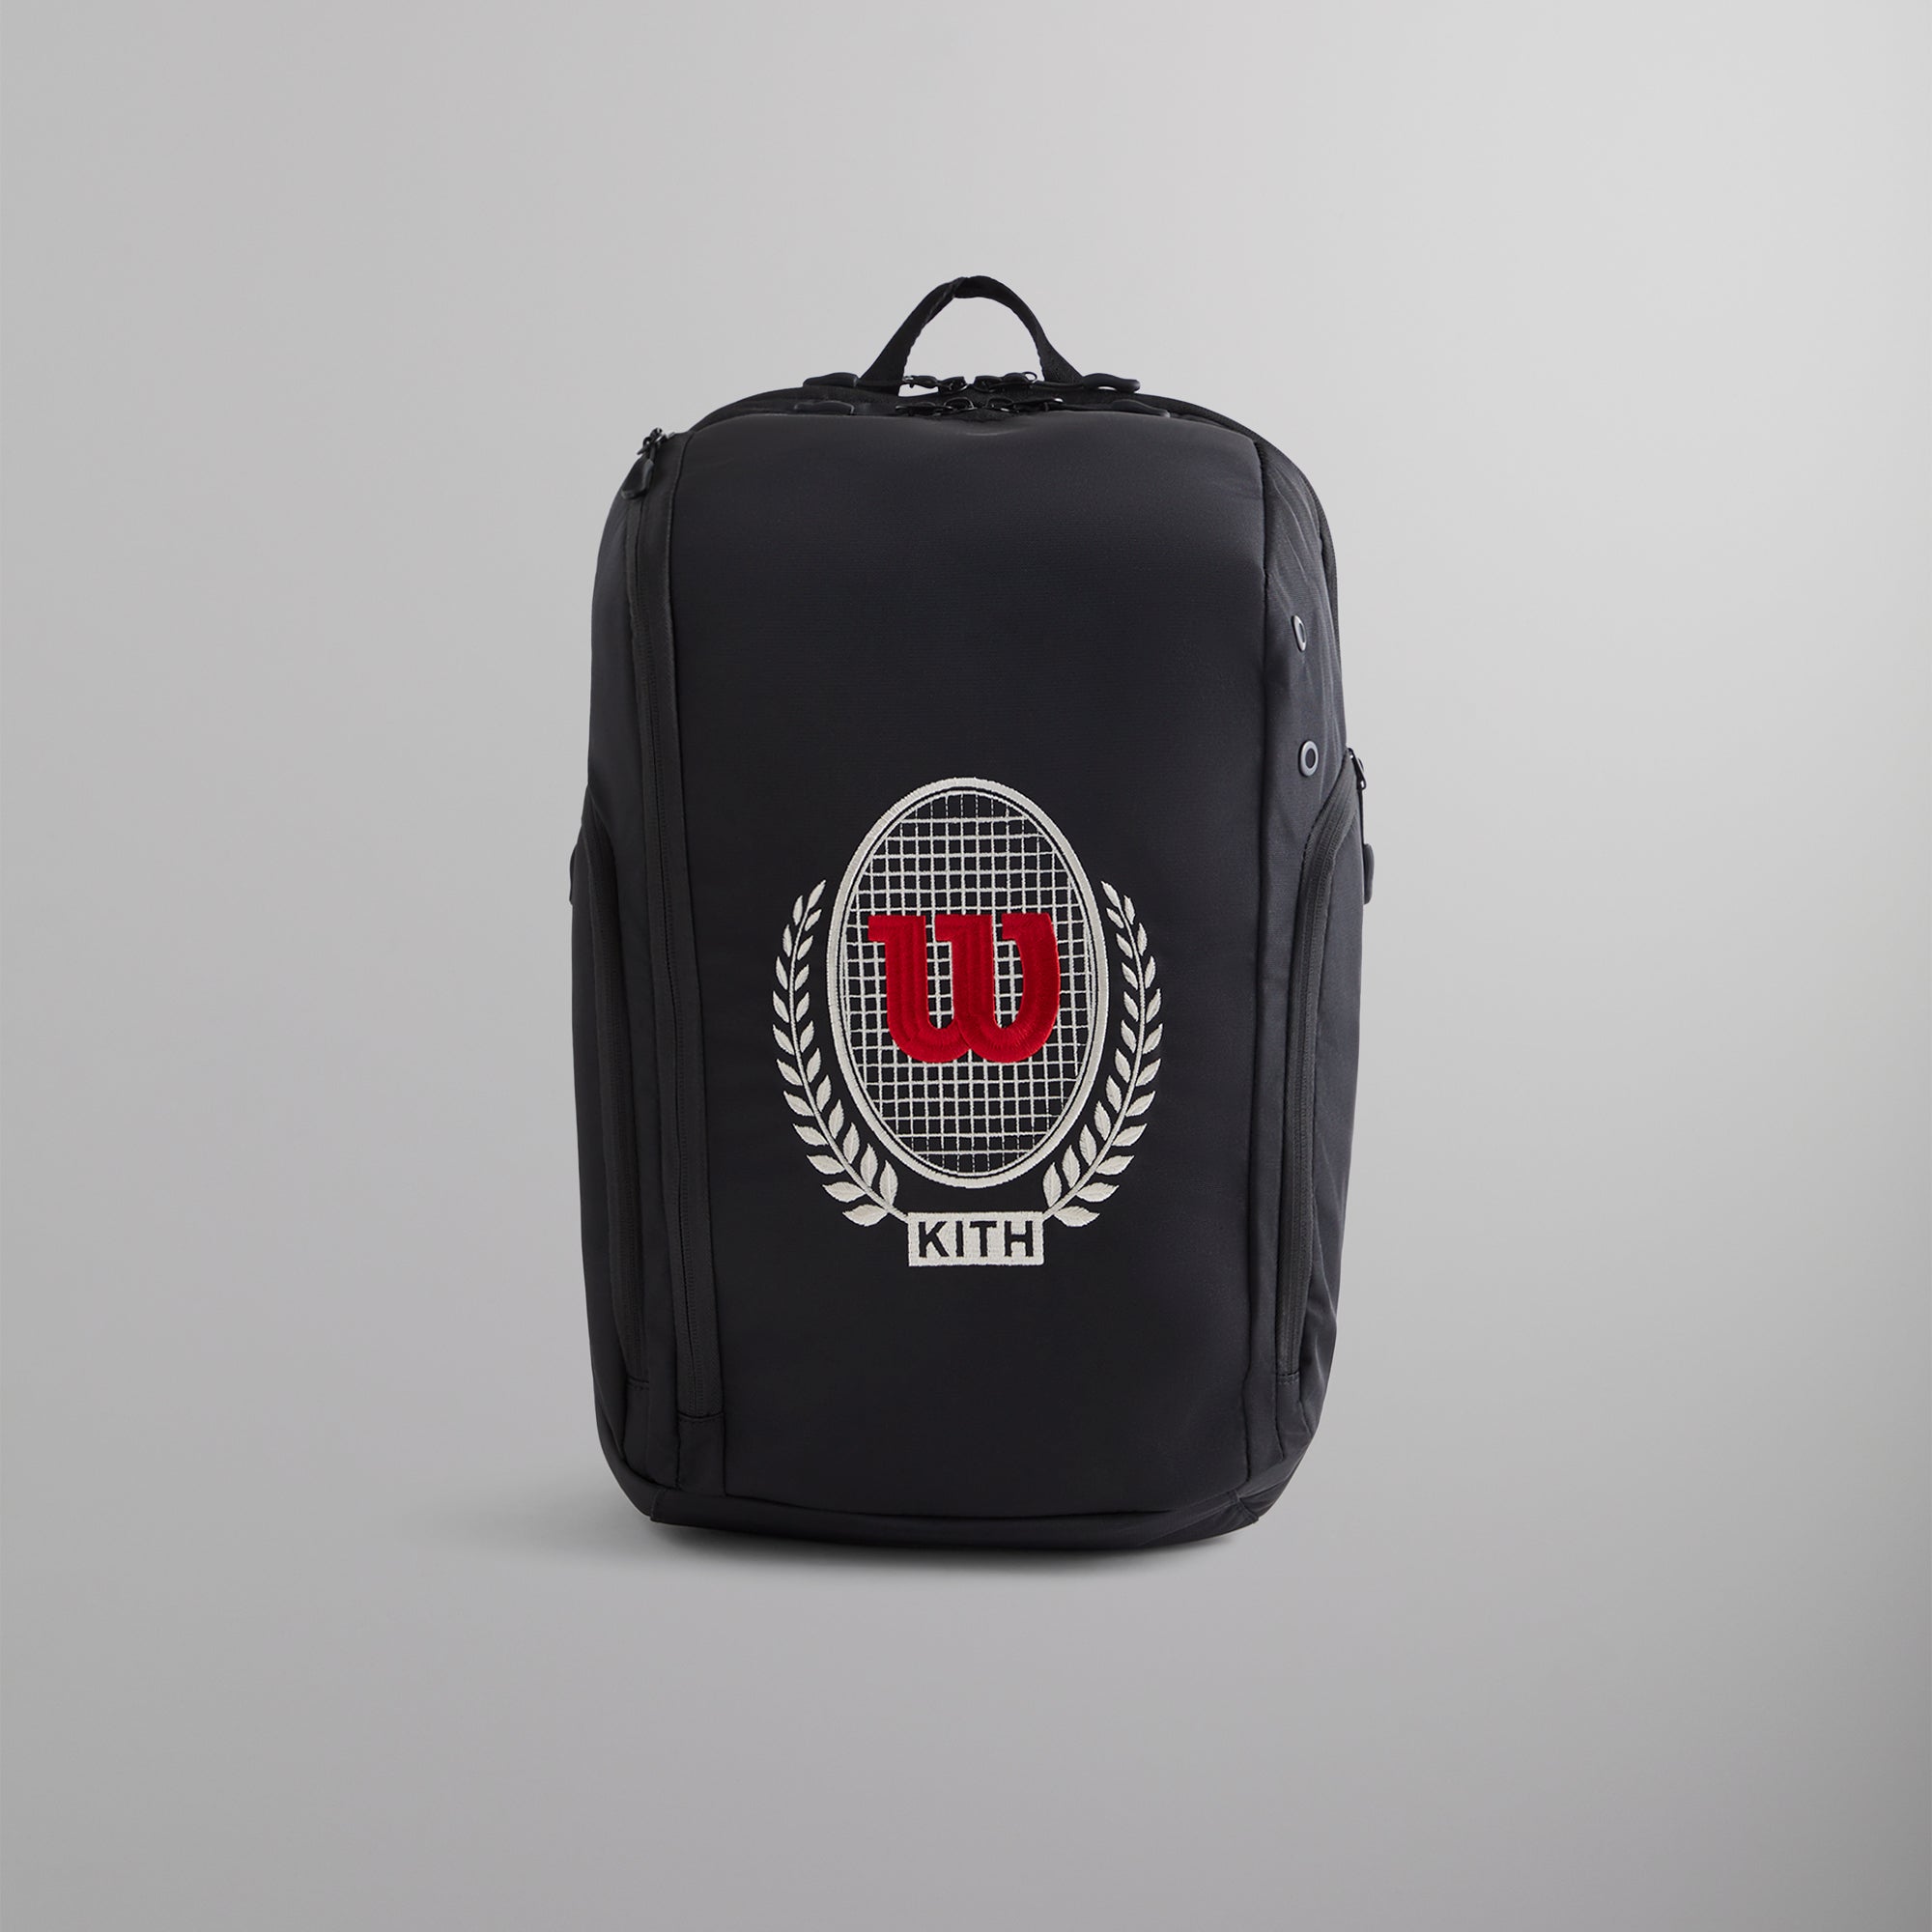 Kith for Wilson PS V13 Super Tour Backpack - Black